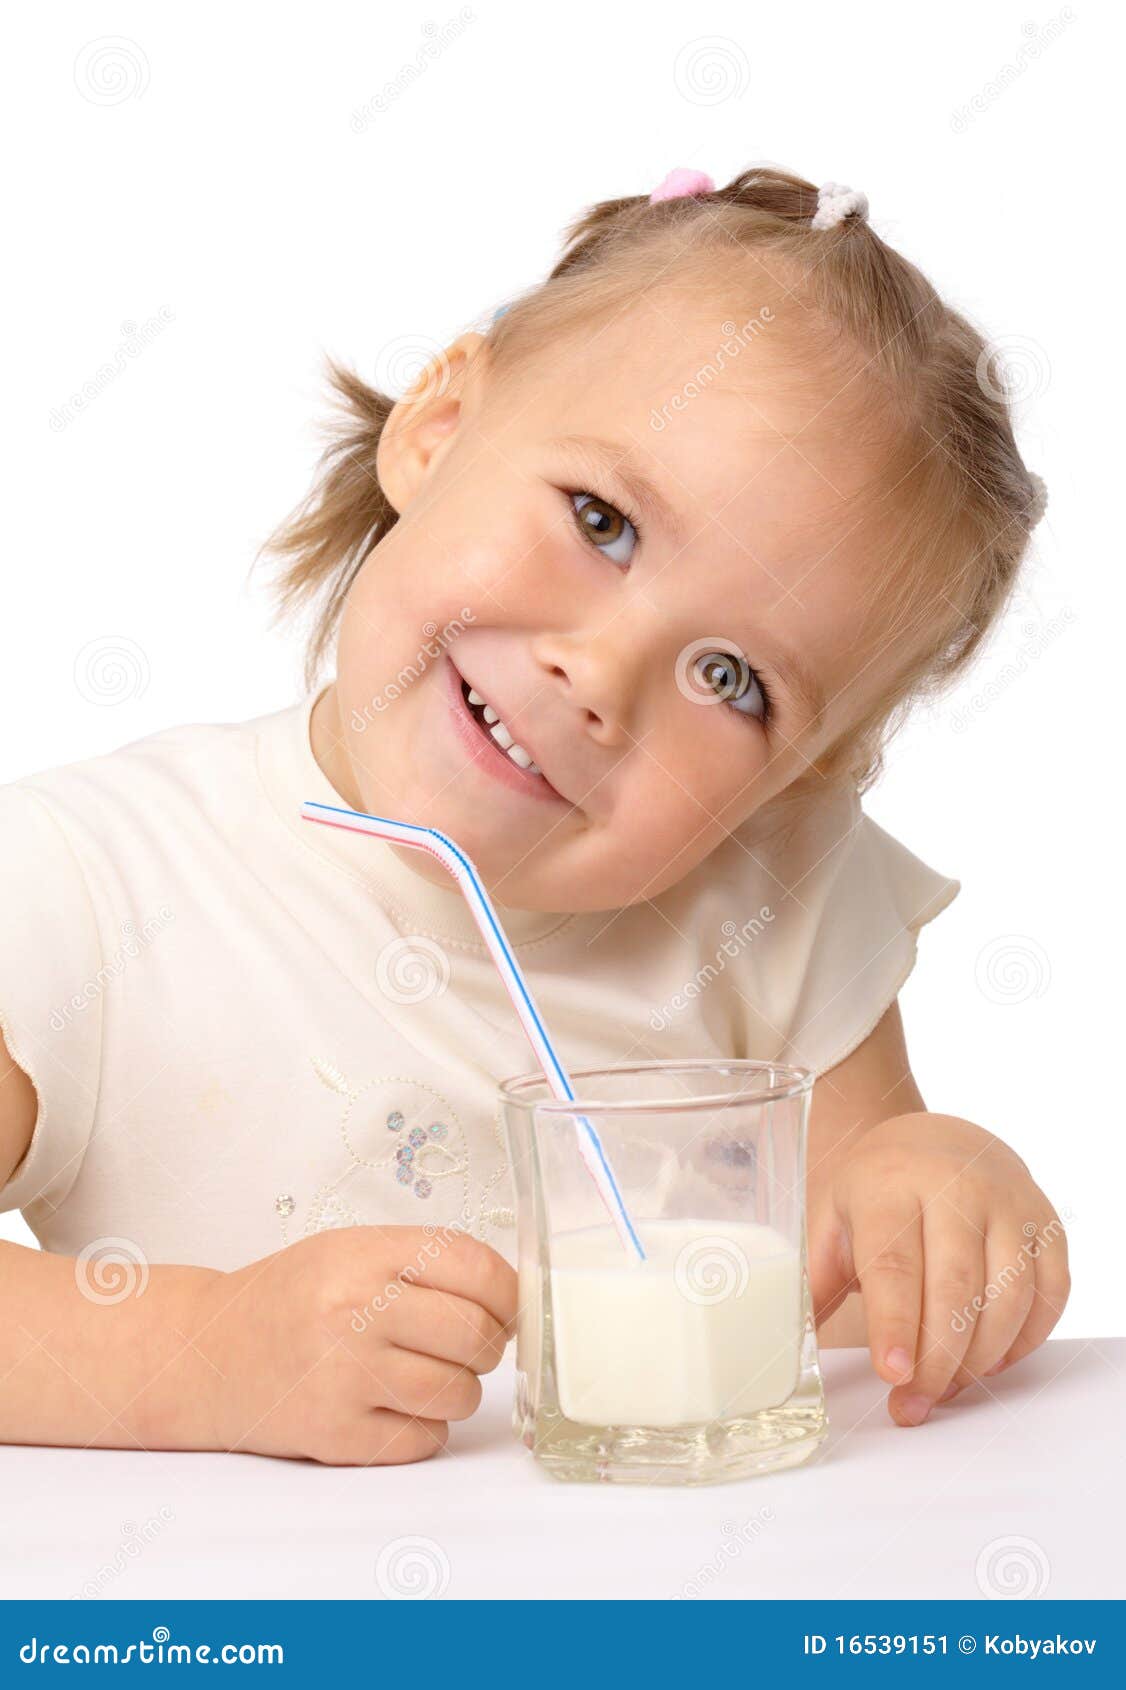 Пьет молоко на английском. Маленькие дети пьют молочко. Ребенок пьет молоко. Молоко через трубочку. Девочка пьет молоко картинка.